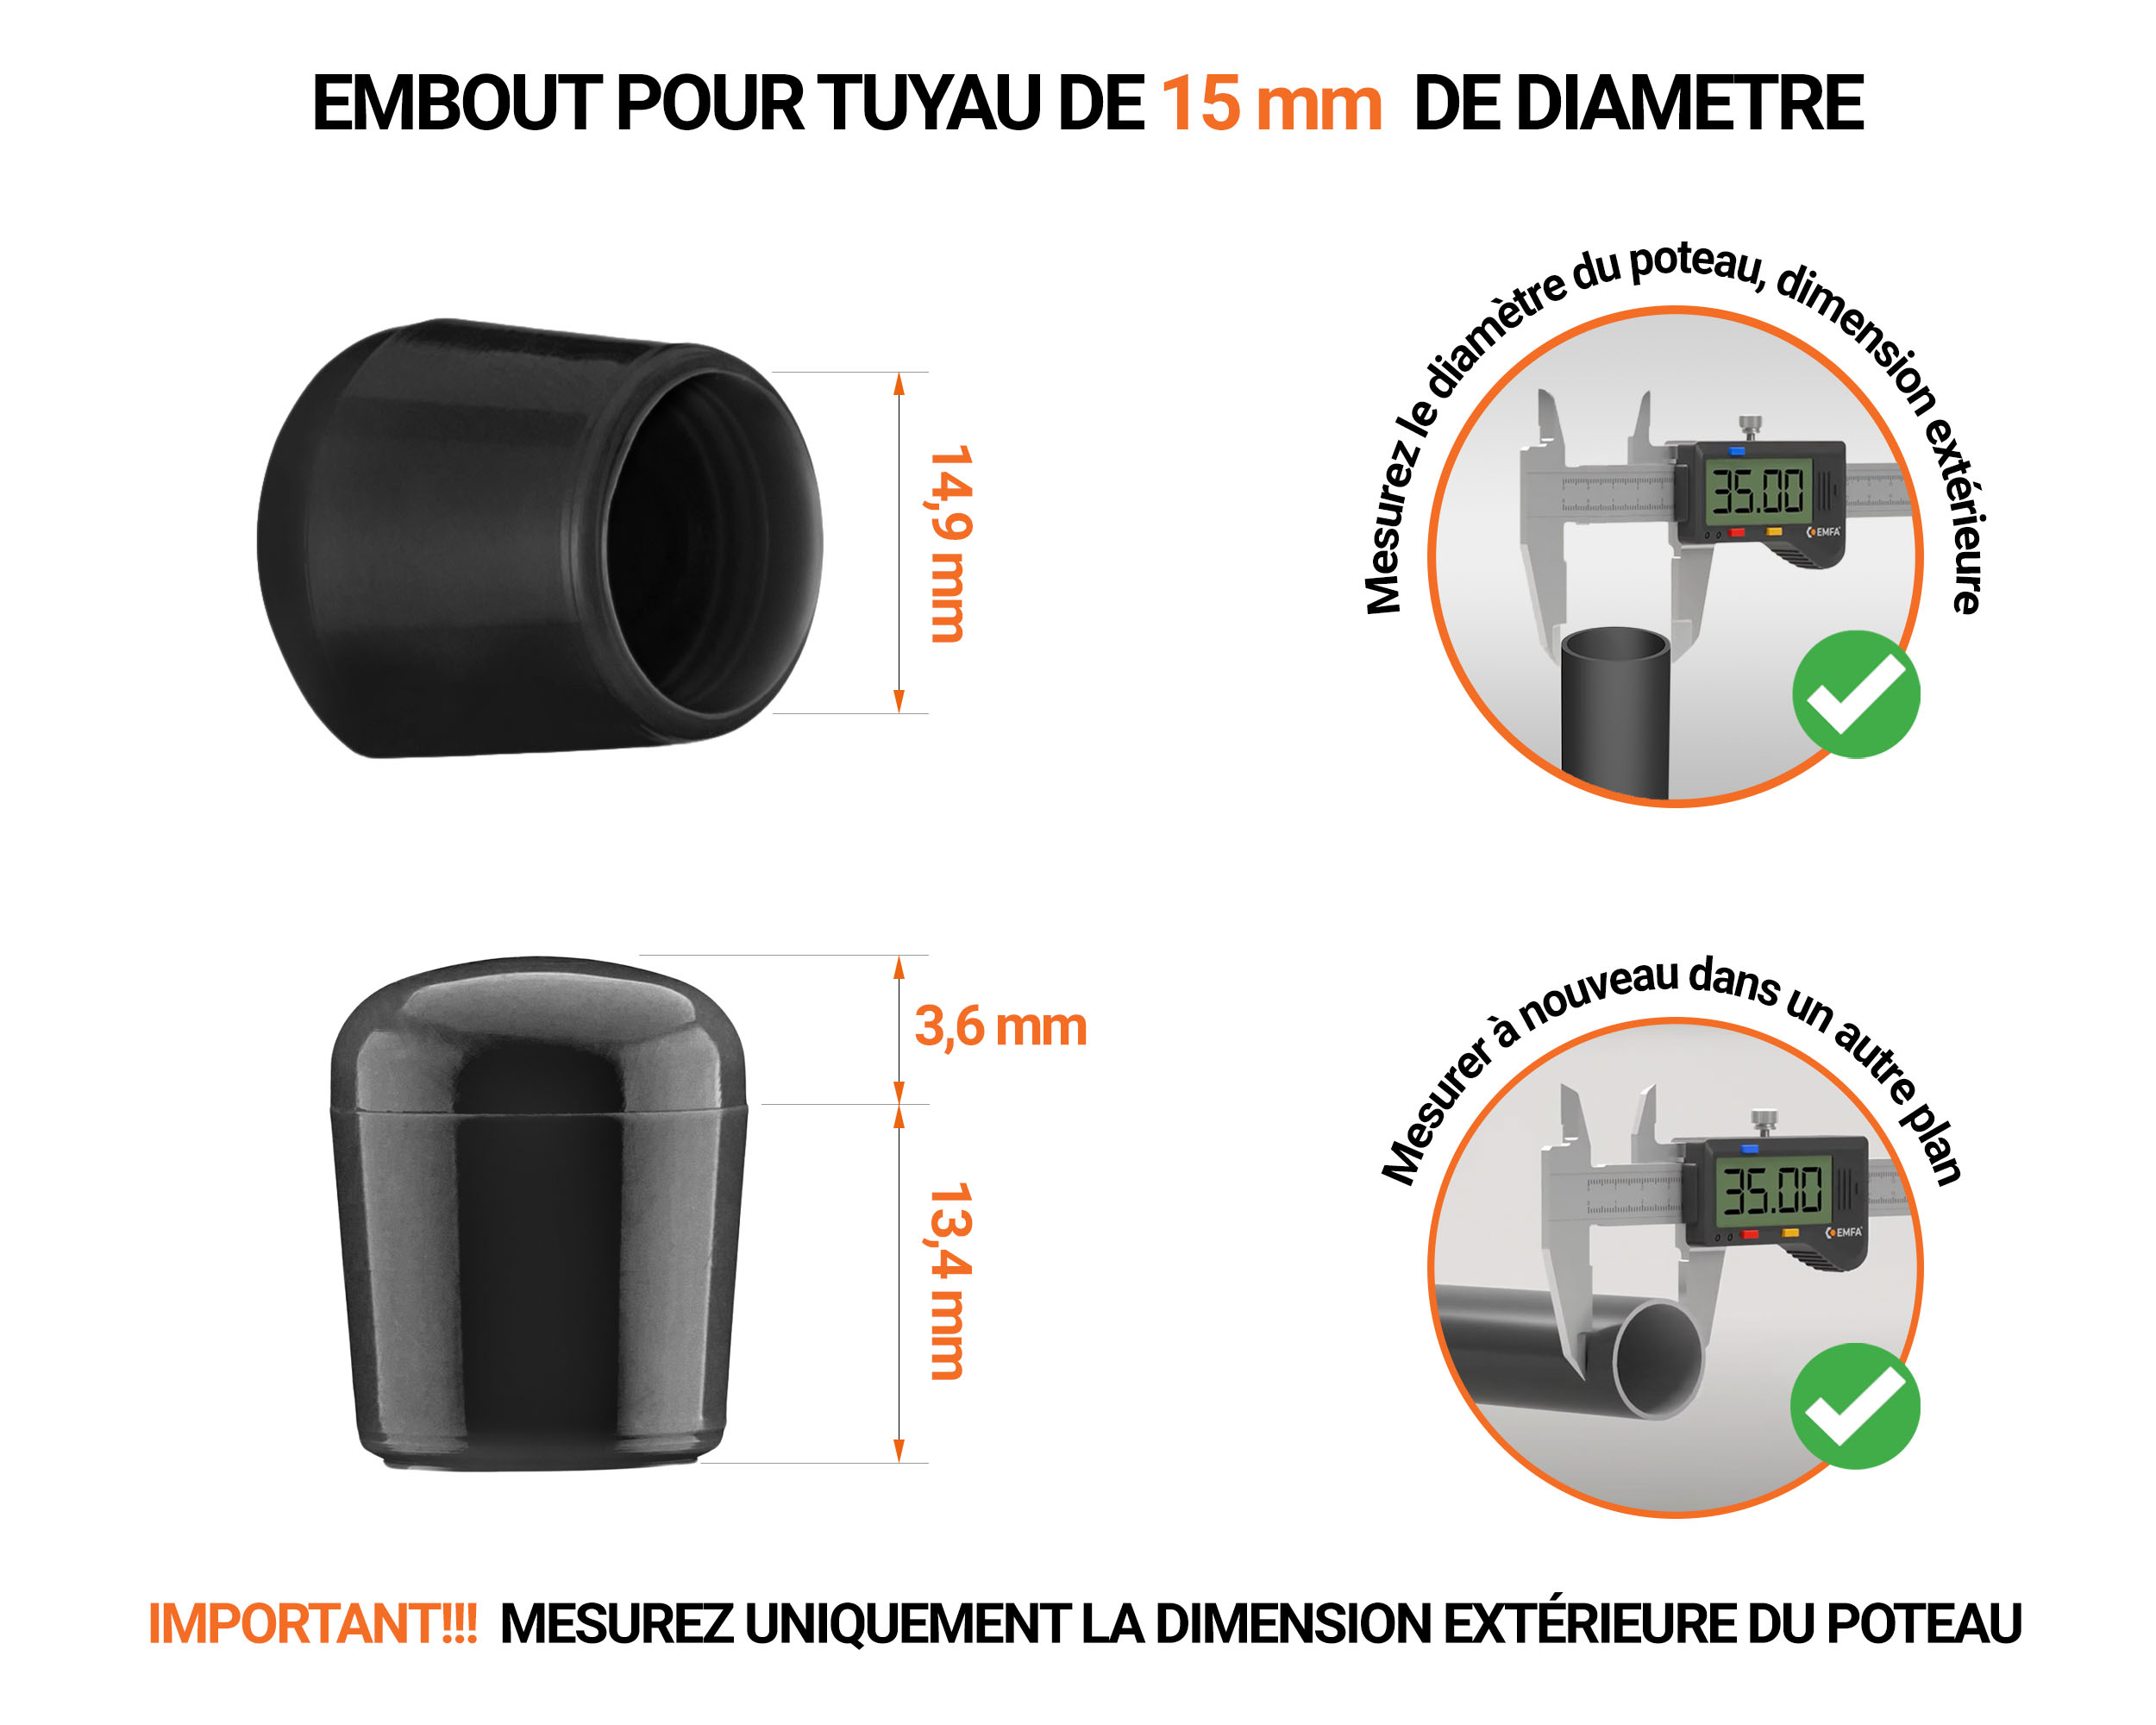 Embout noir de diamètre extérieur 15 mm pour tube rond avec dimensions et guide de mesure correcte du bouchon plastique.